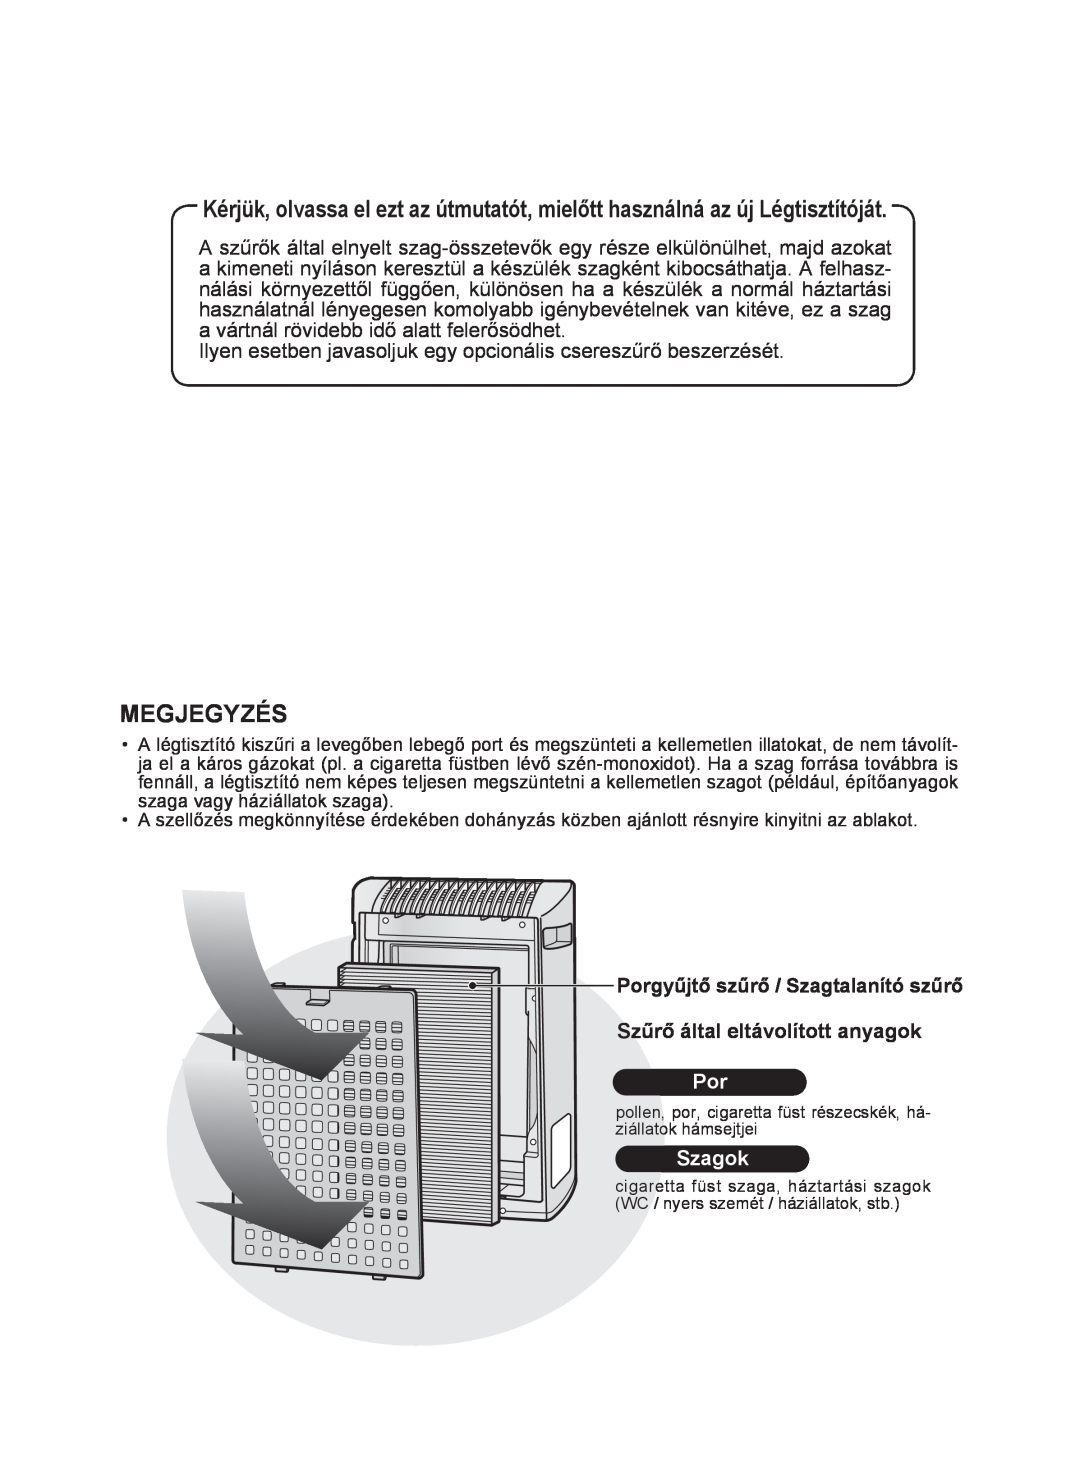 Sharp KC-930E operation manual Megjegyzés, Porgyűjtő szűrő / Szagtalanító szűrő, Szűrő által eltávolított anyagok, Szagok 